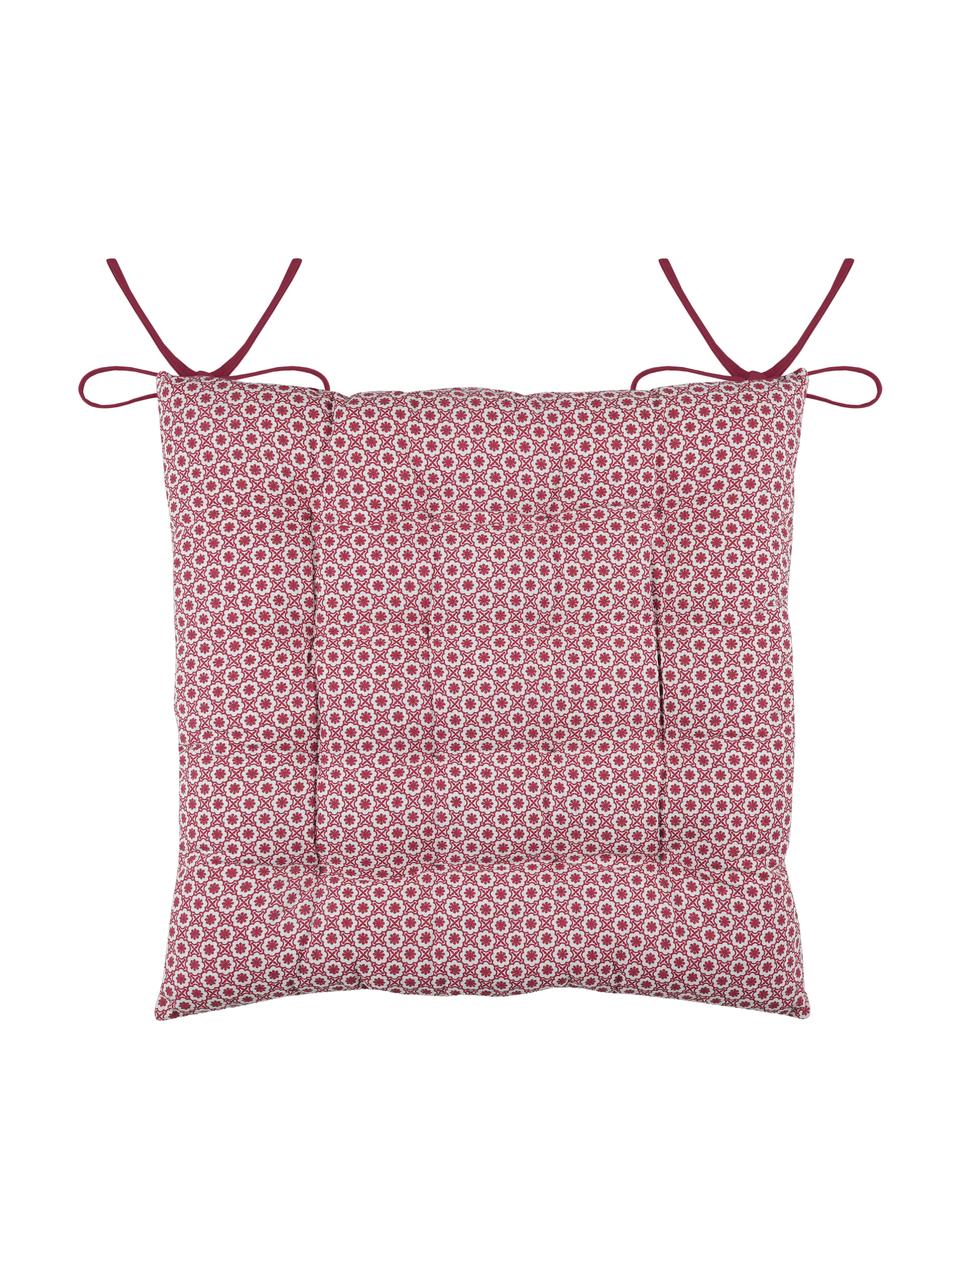 Cuscino sedia reversibile rosso/bianco Galette, 100% cotone, Rosso, bianco, Larg. 40 x Lung. 40 cm